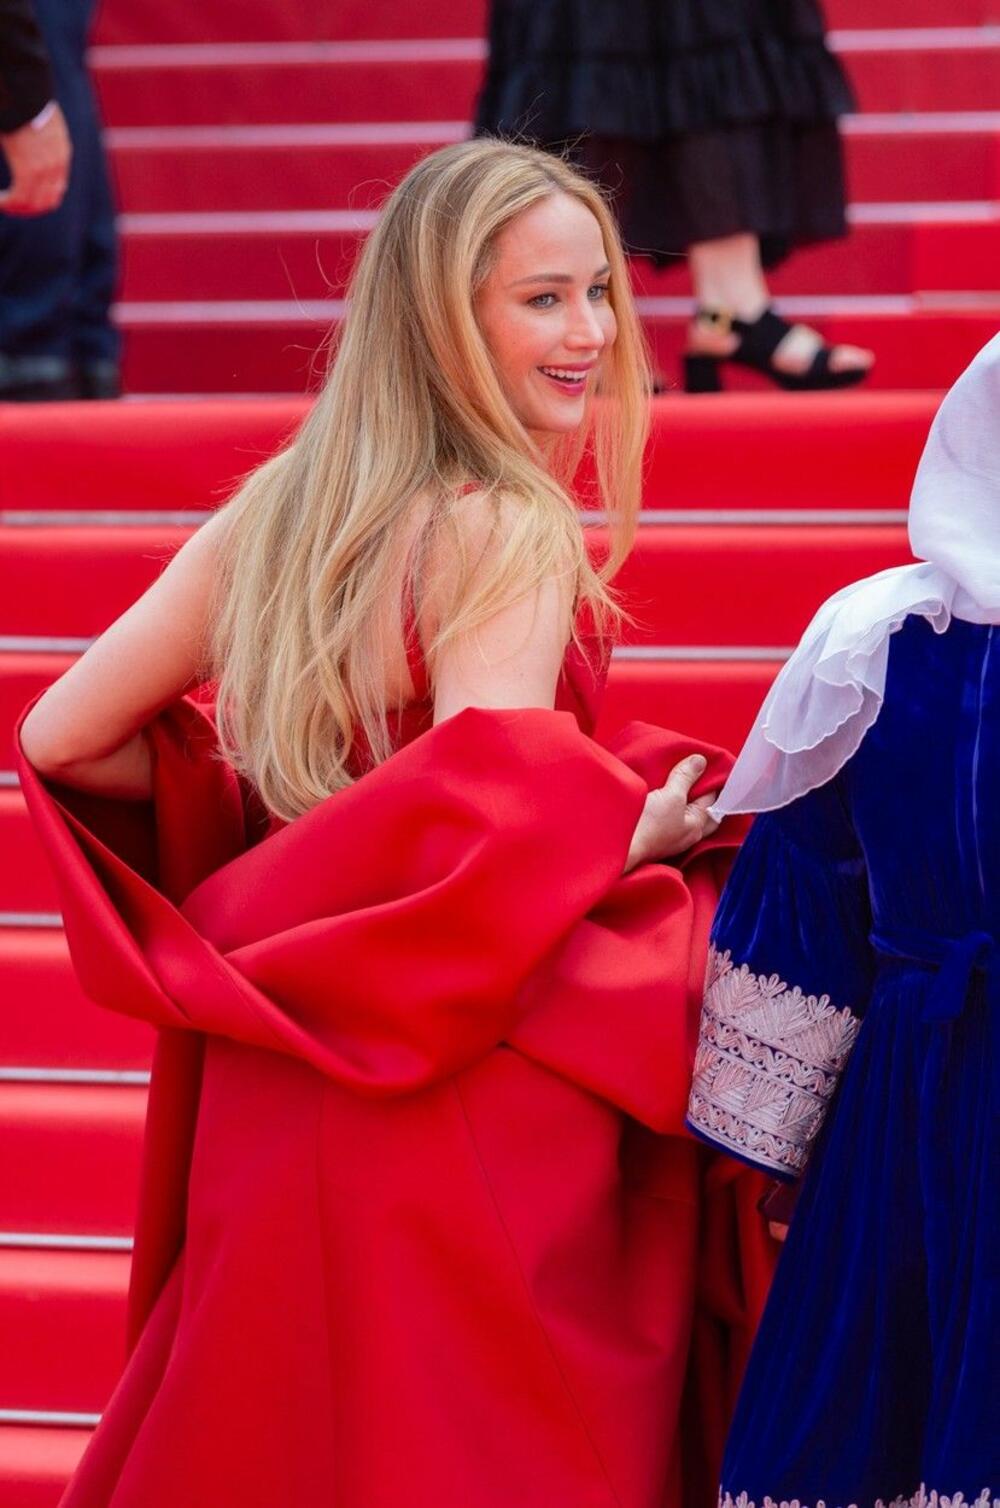 <p>Glumica Dženifer Lorens se na 76. Kanskom festivalu pojavila u predivnoj crvenoj haljini koja je donela dašak holivudskog glamura u Kan.</p>